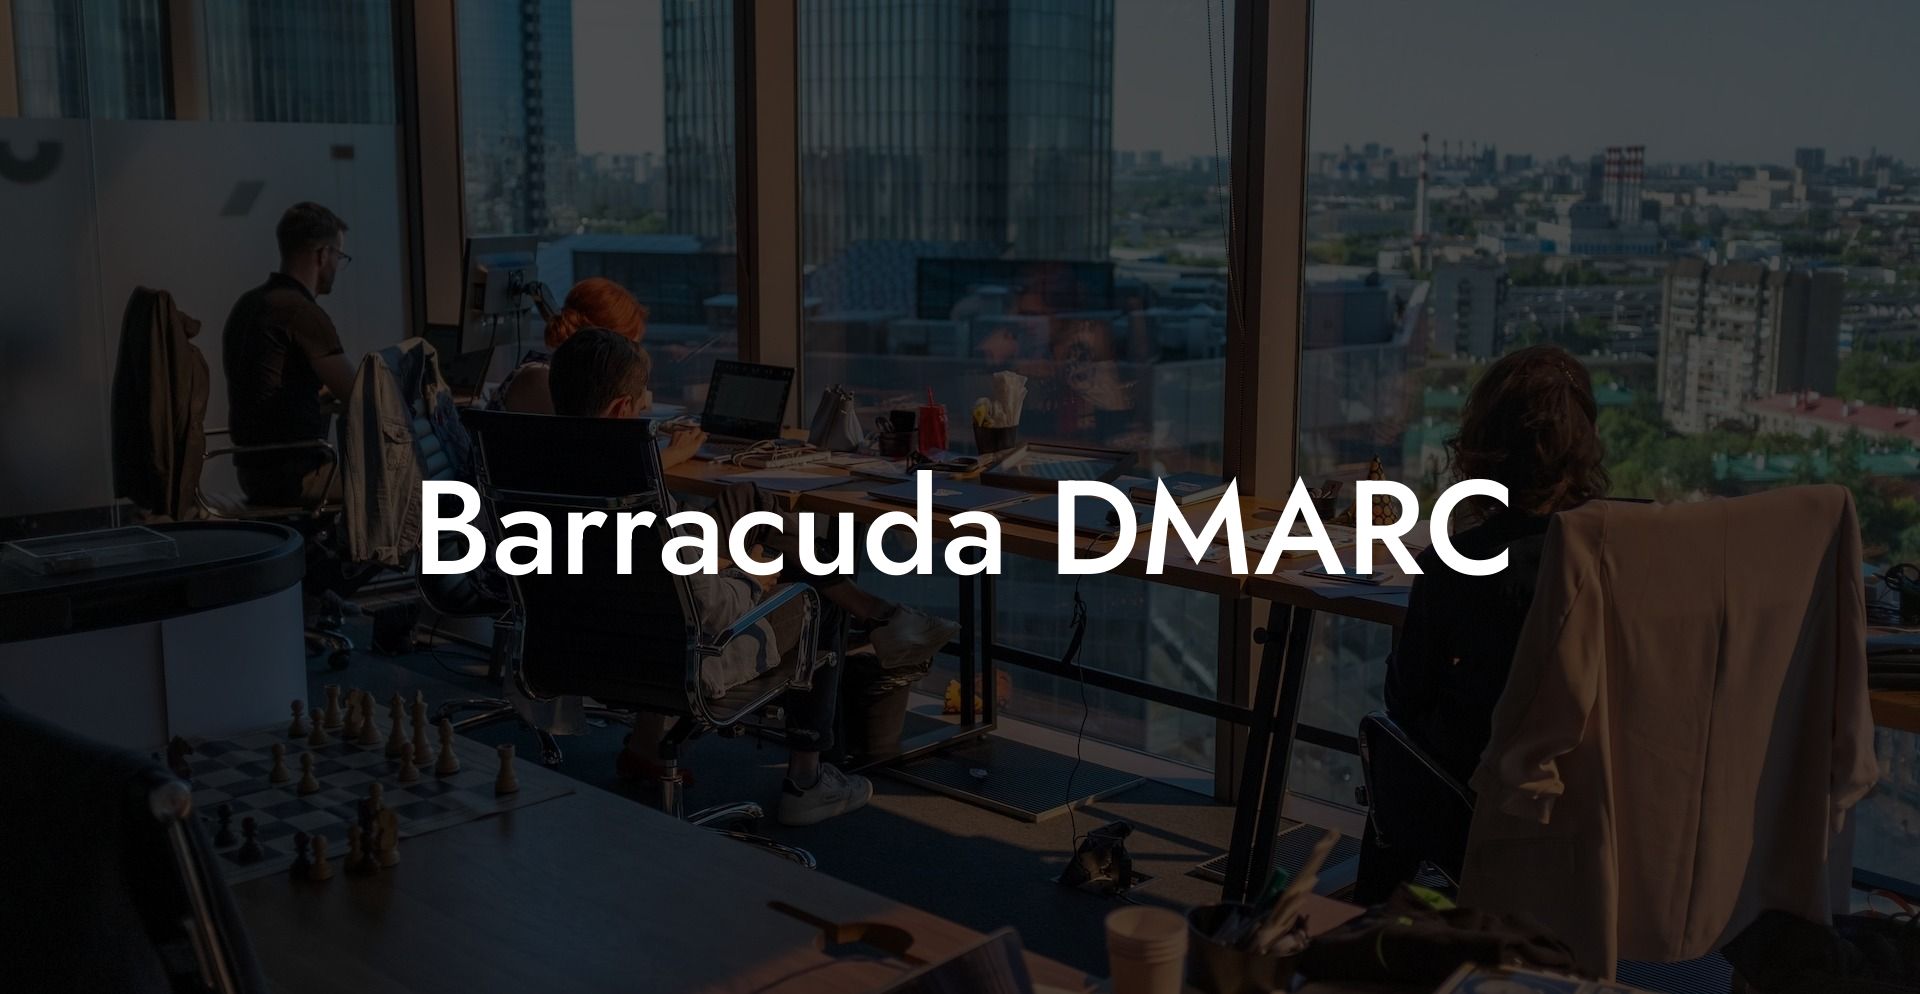 Barracuda DMARC